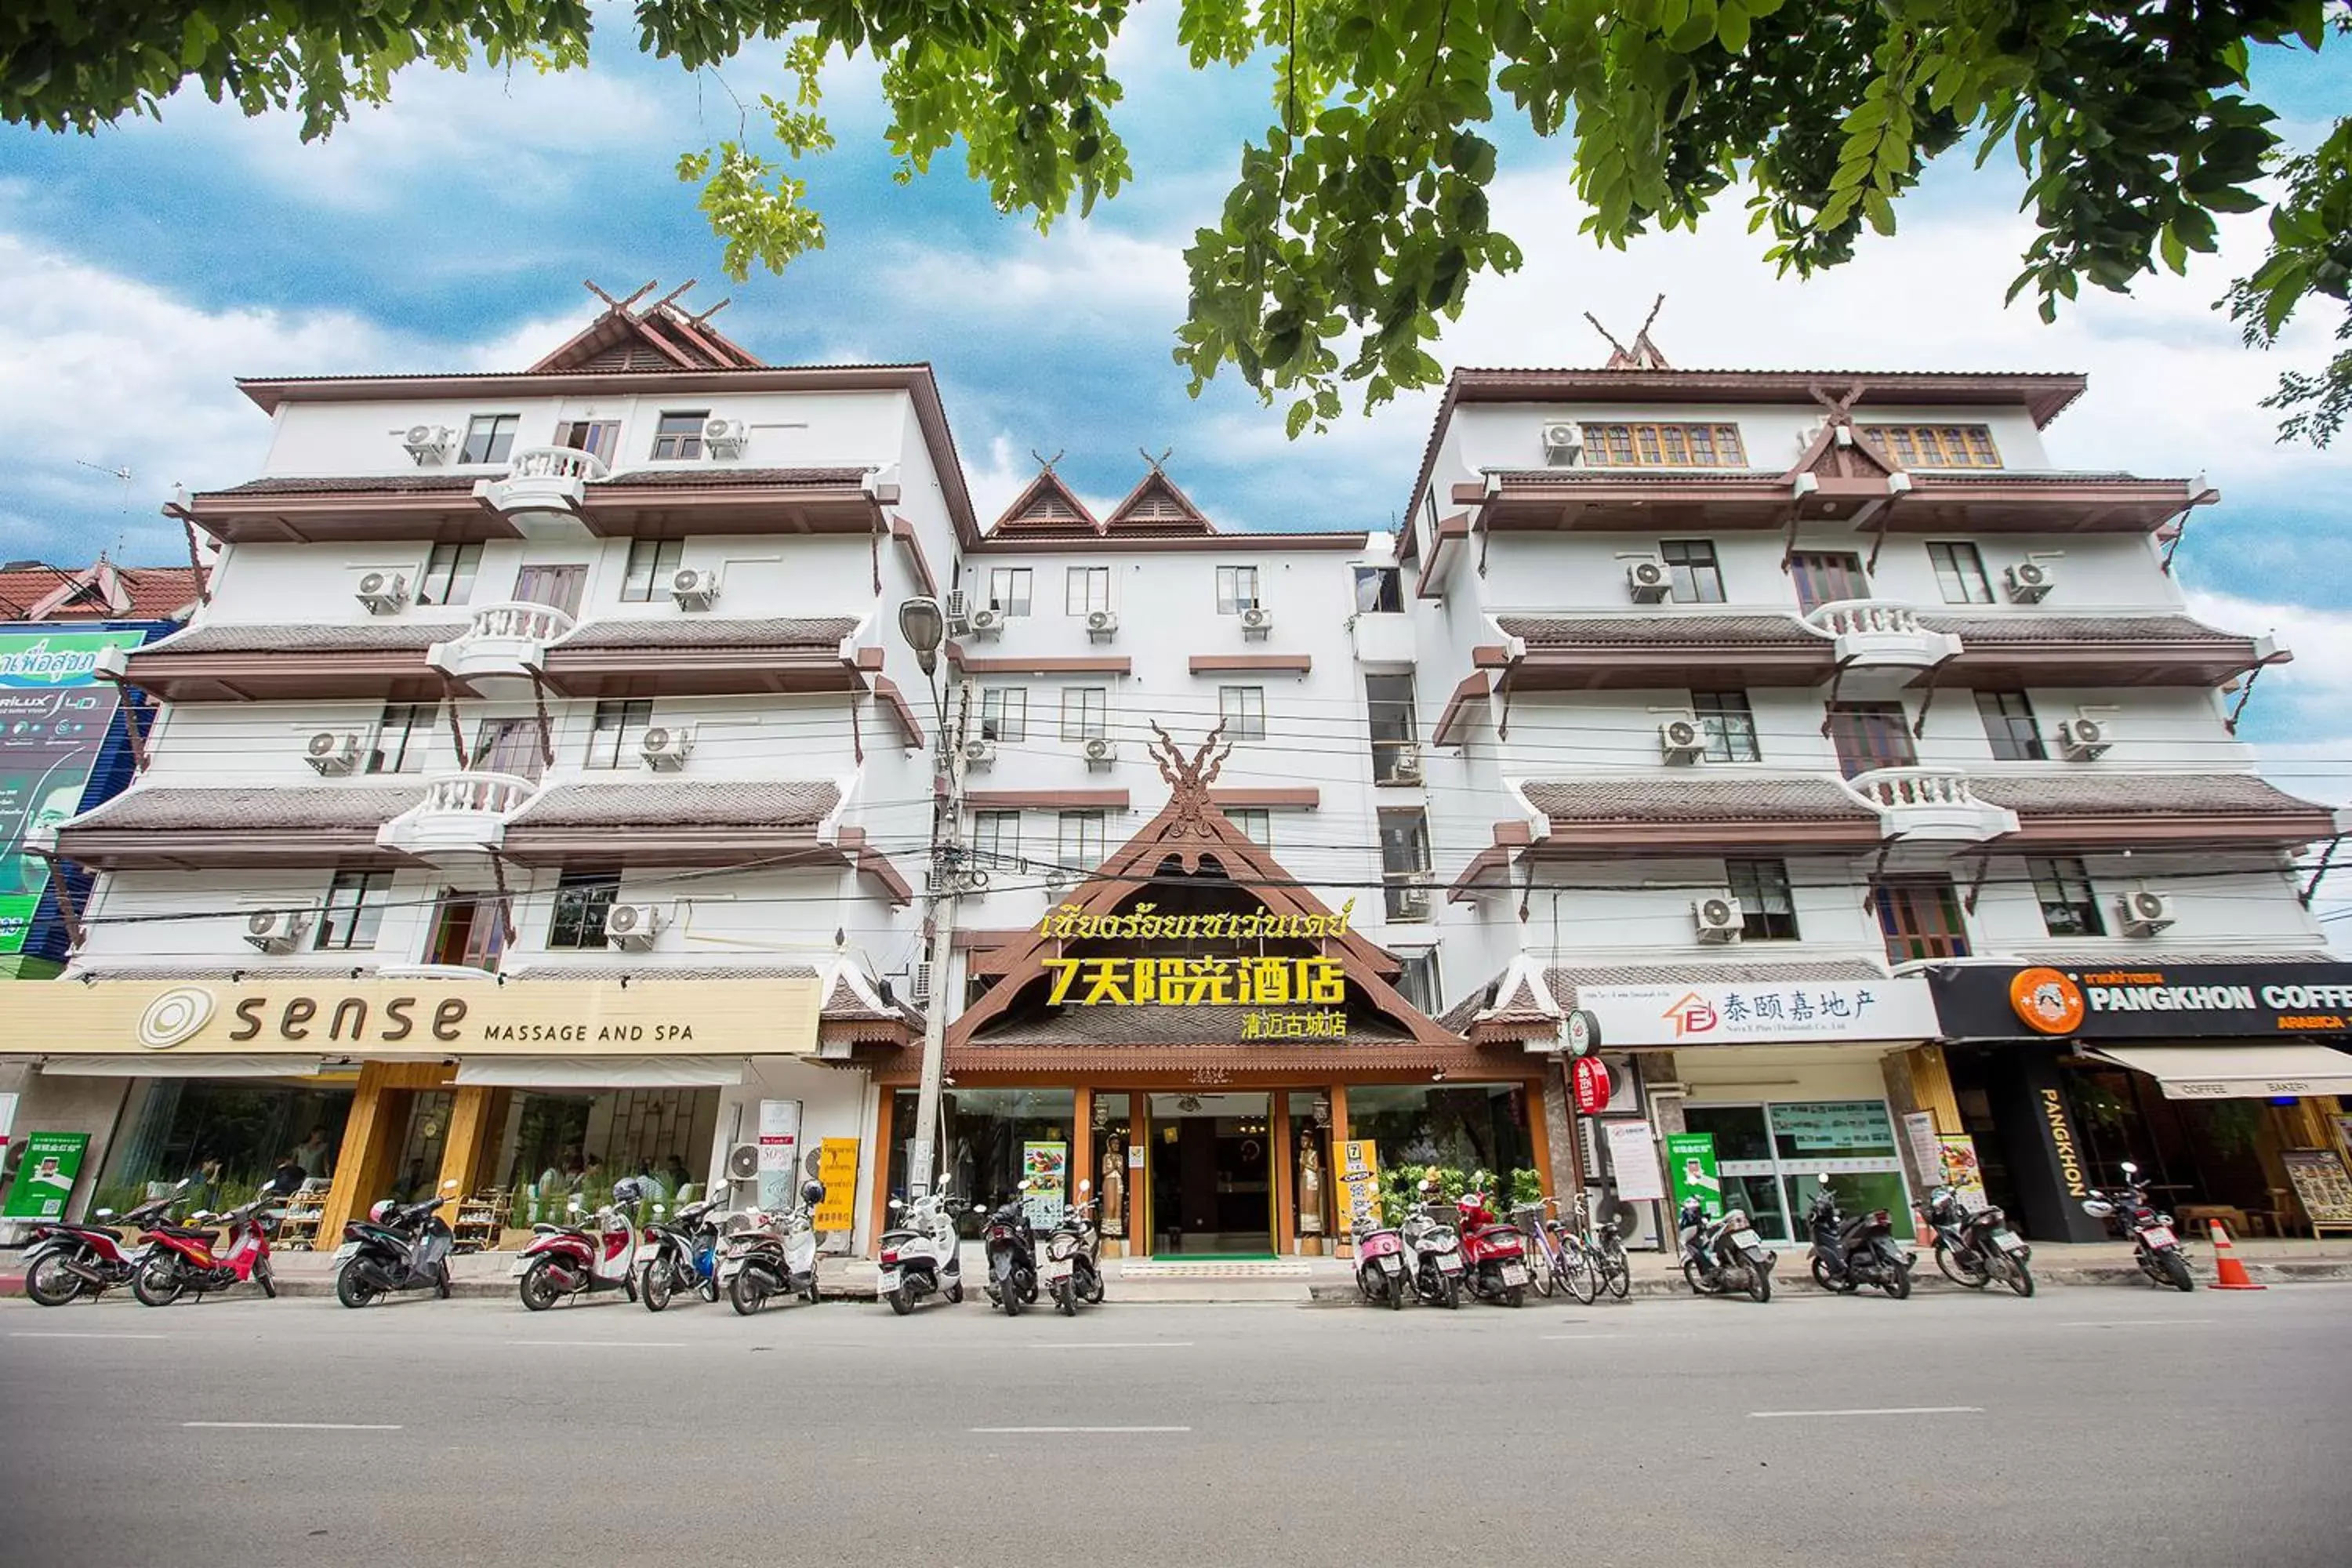 Facade/entrance in Chiang Roi 7 Days Inn